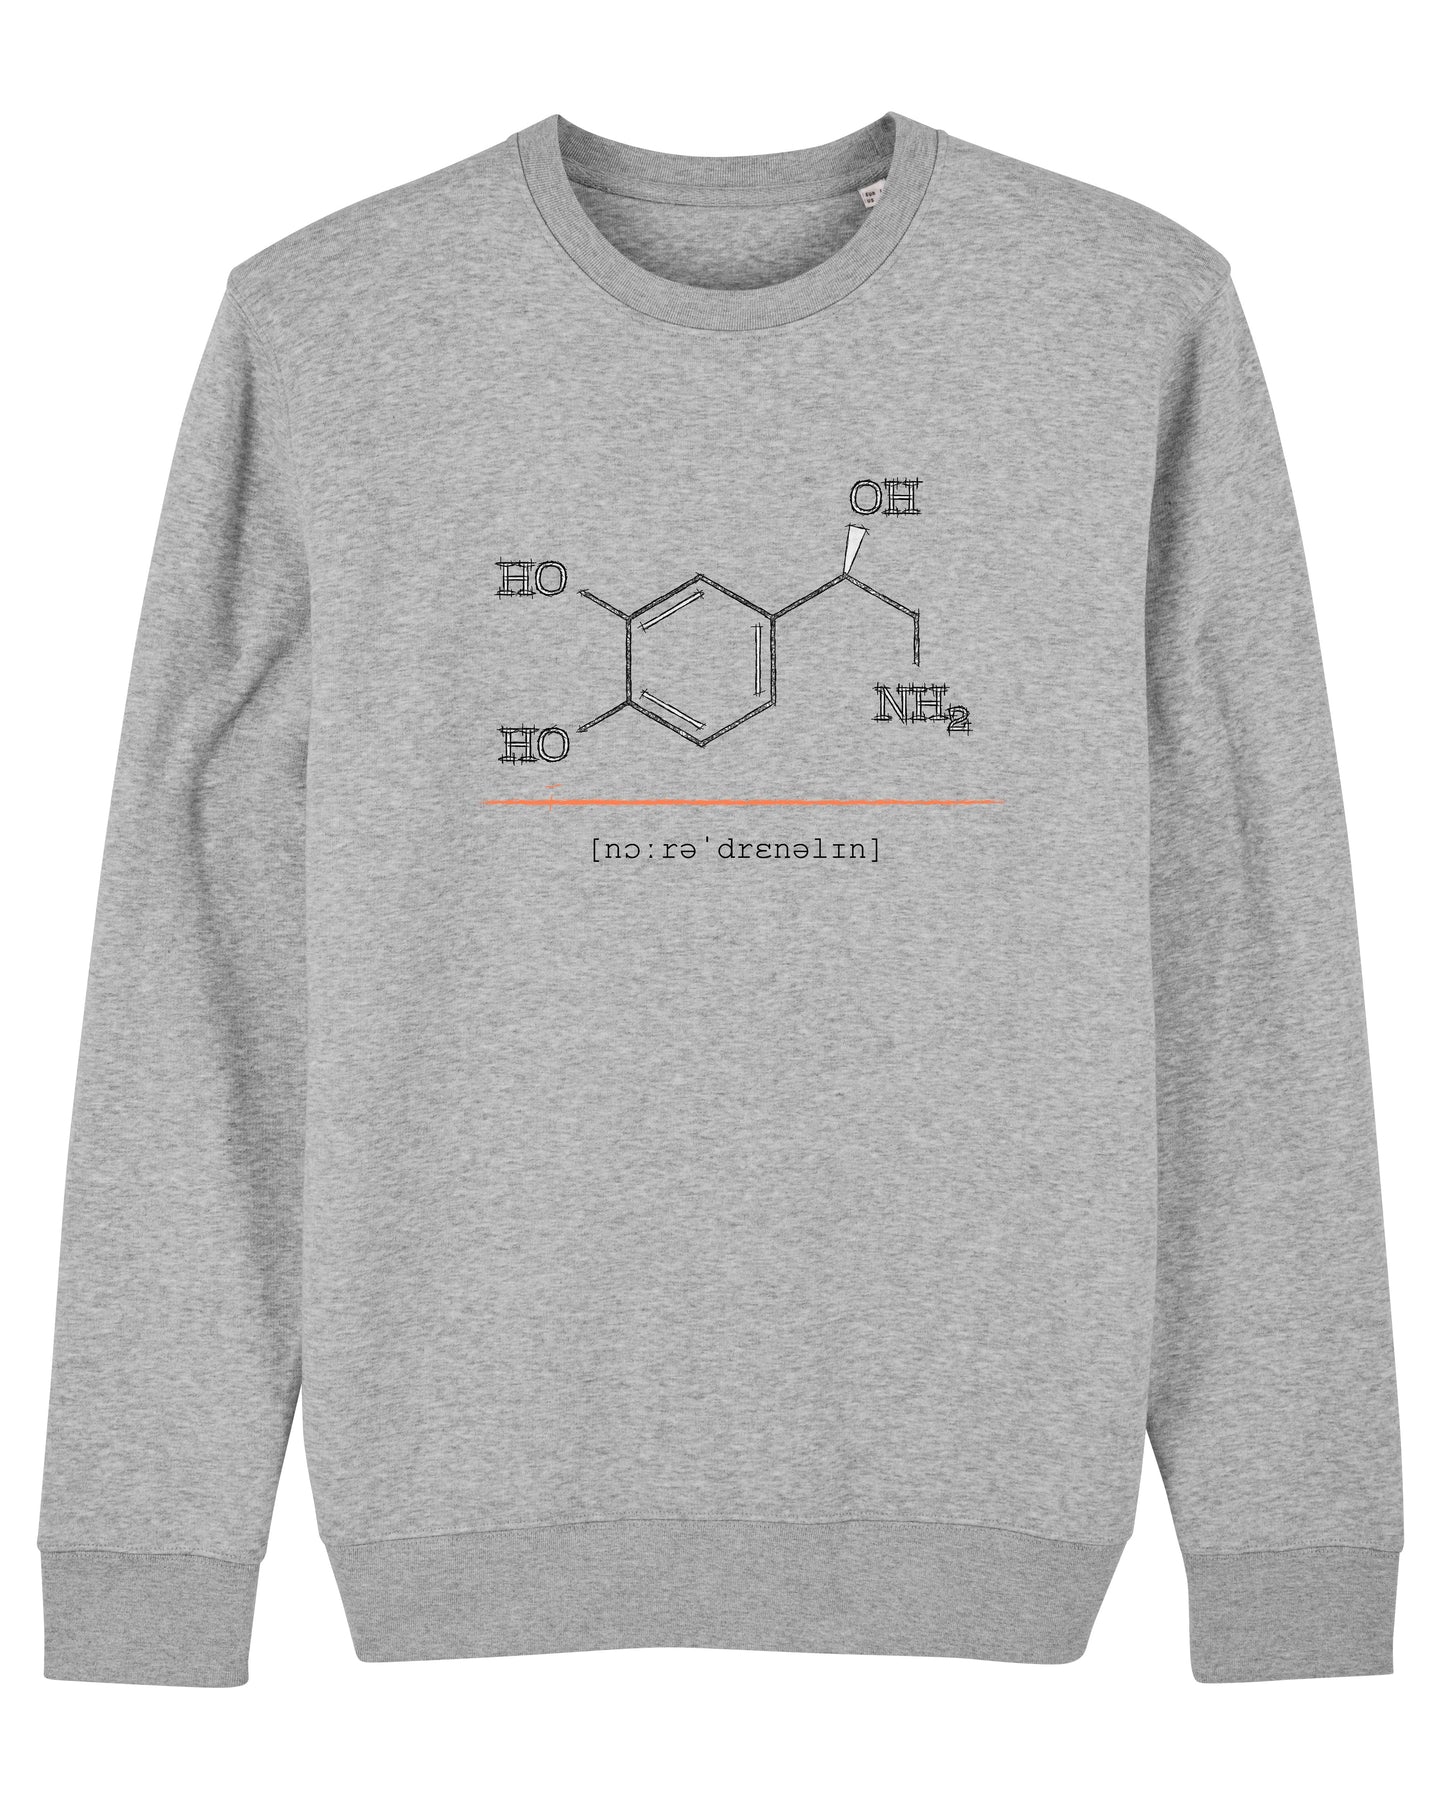 Organic Sweatshirt - The Noradrenalin